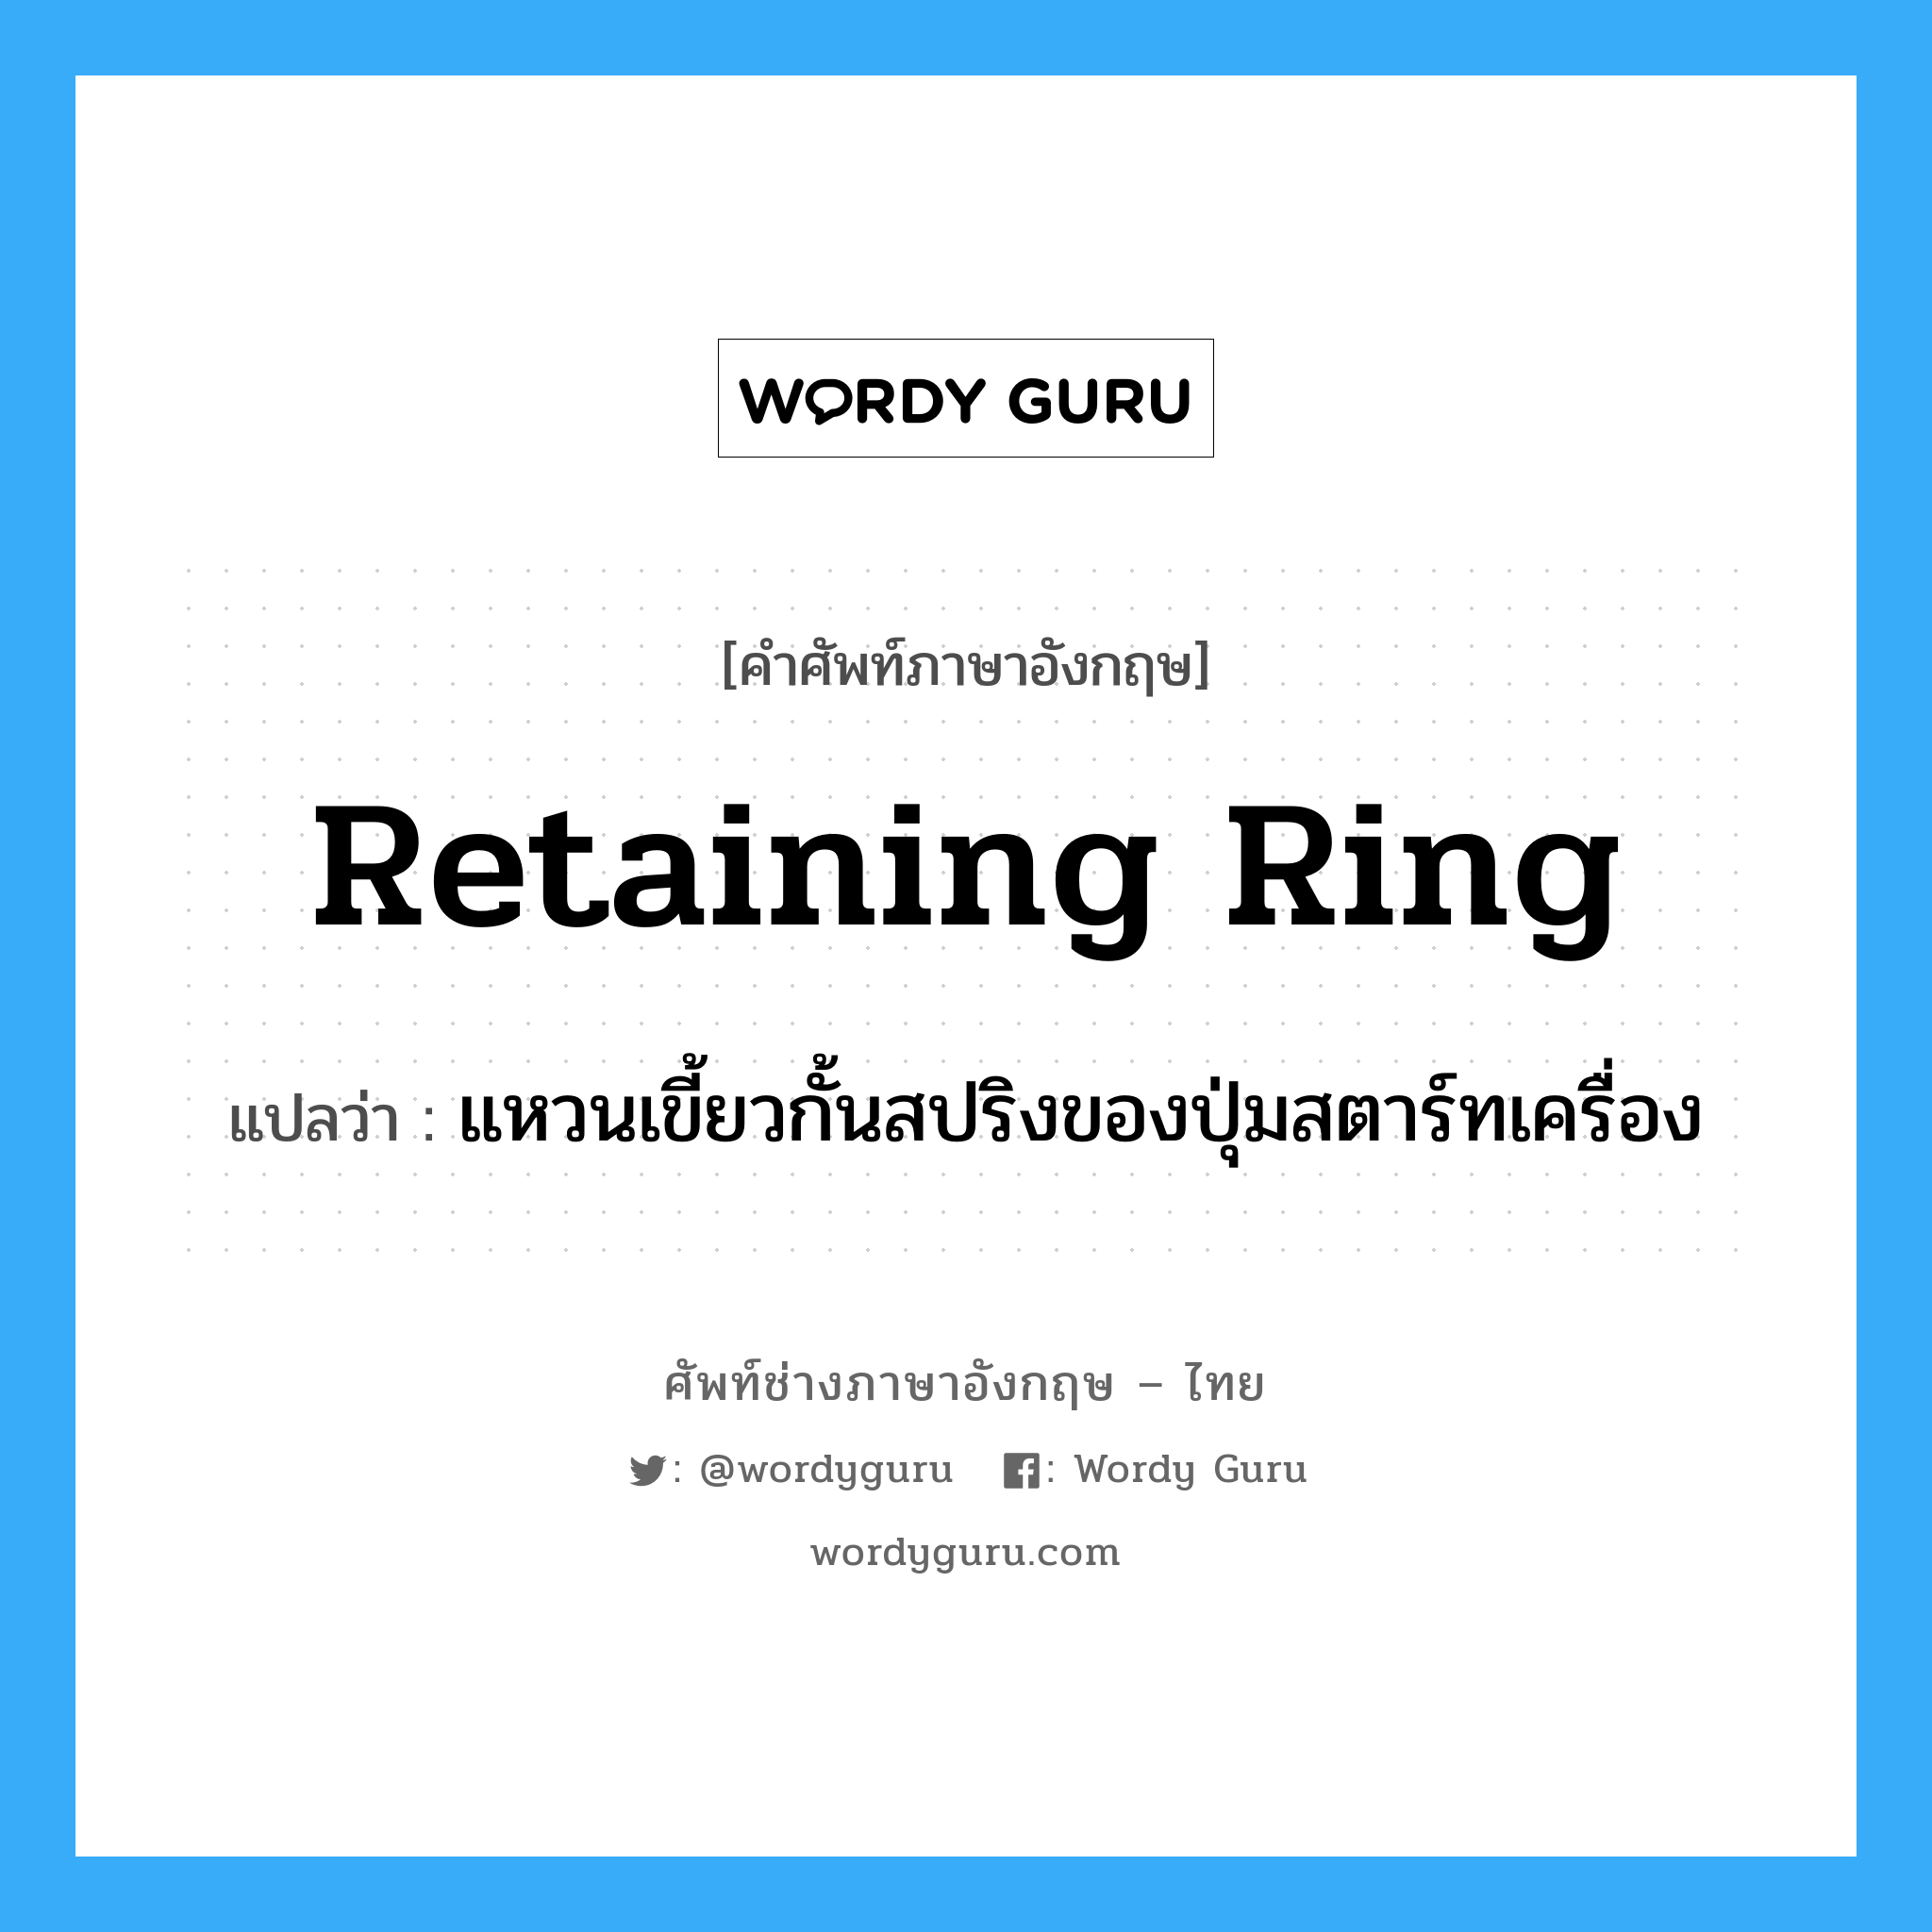 retaining ring แปลว่า?, คำศัพท์ช่างภาษาอังกฤษ - ไทย retaining ring คำศัพท์ภาษาอังกฤษ retaining ring แปลว่า แหวนเขี้ยวกั้นสปริงของปุ่มสตาร์ทเครื่อง